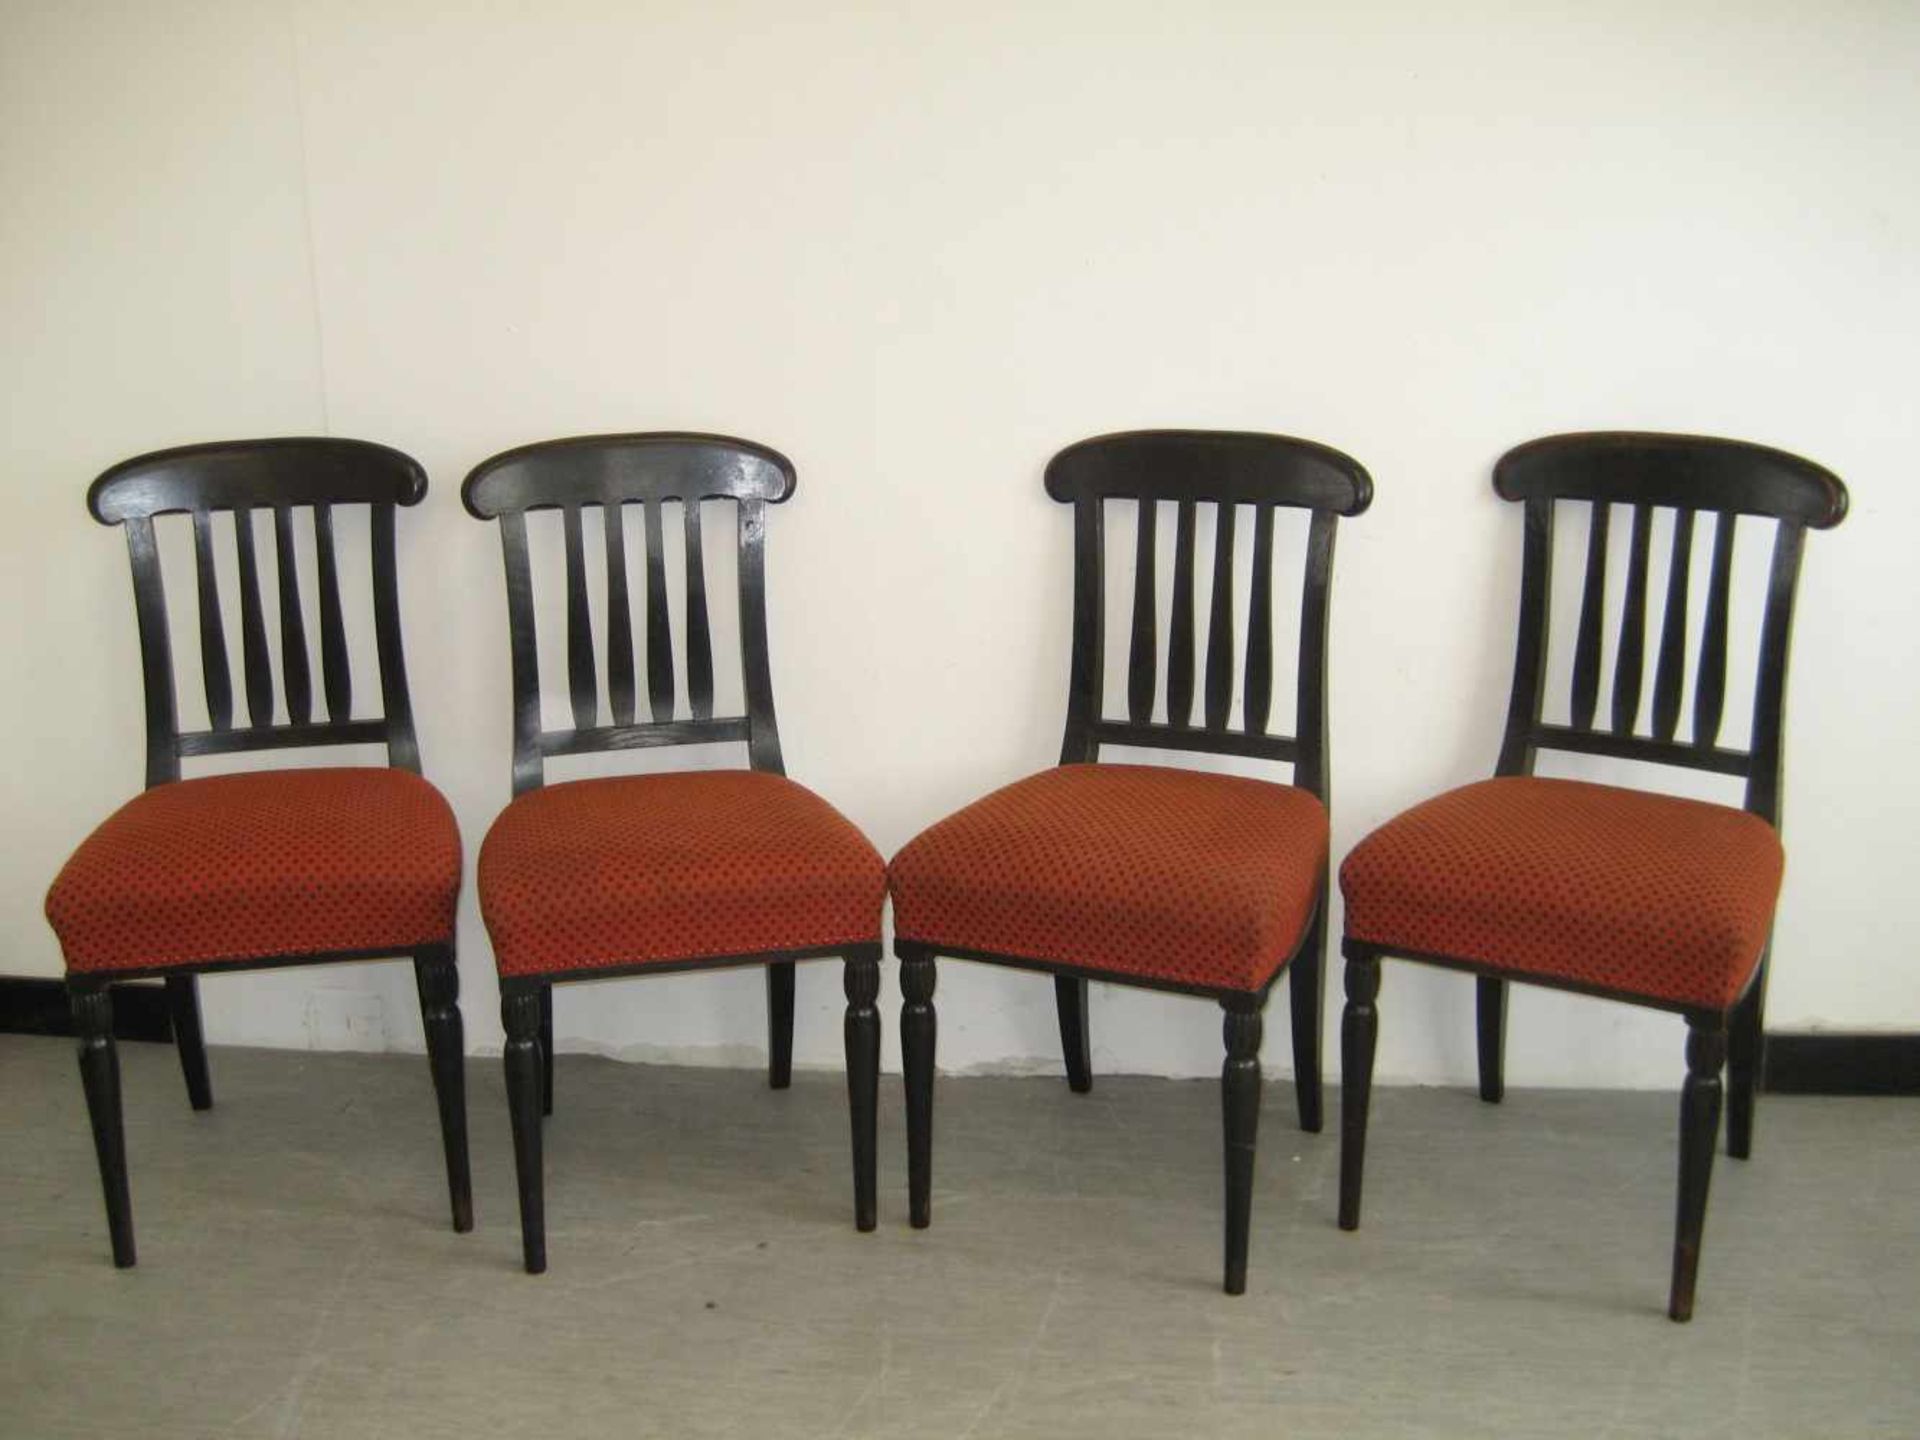 Vier Stühle, Eiche, dunkel gebeizt, Anf. 20.Jh., H 95 B 46 T 52 cm